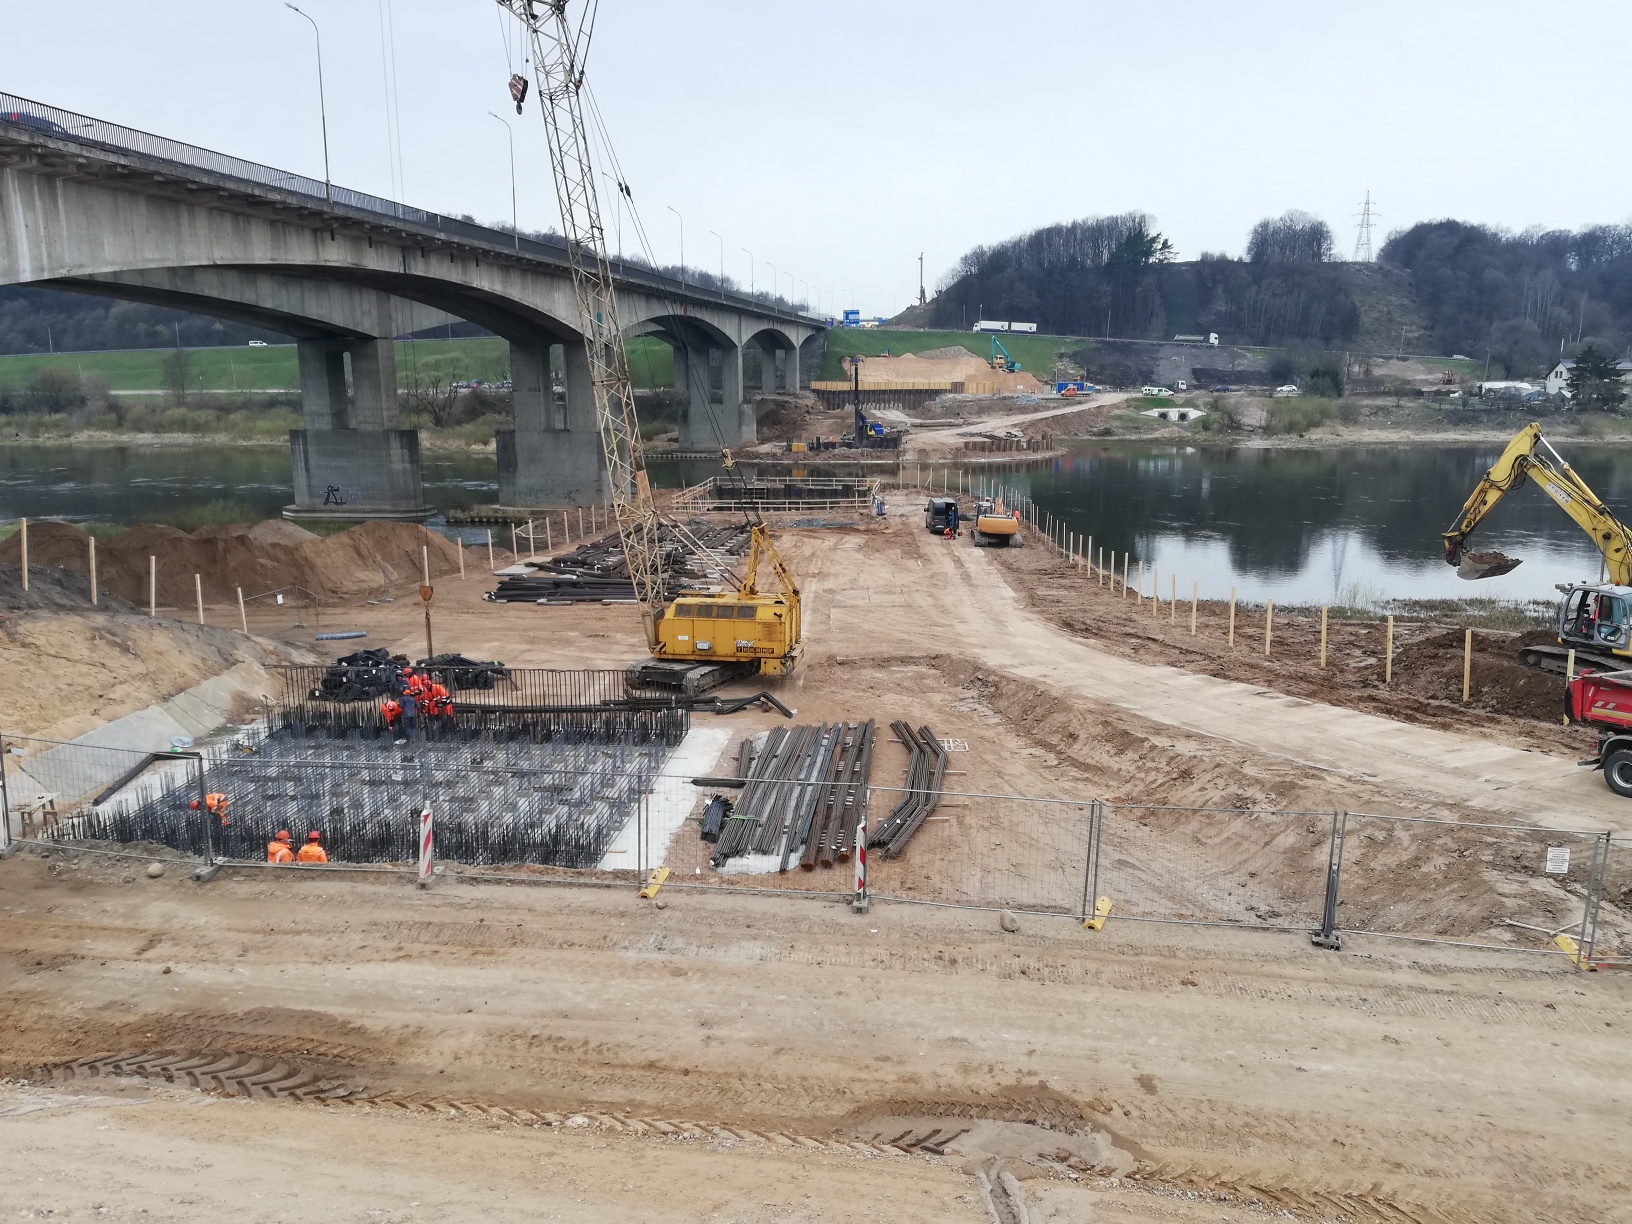 Tilto statybos darbai prie Kauno vyksta visu pajėgumu